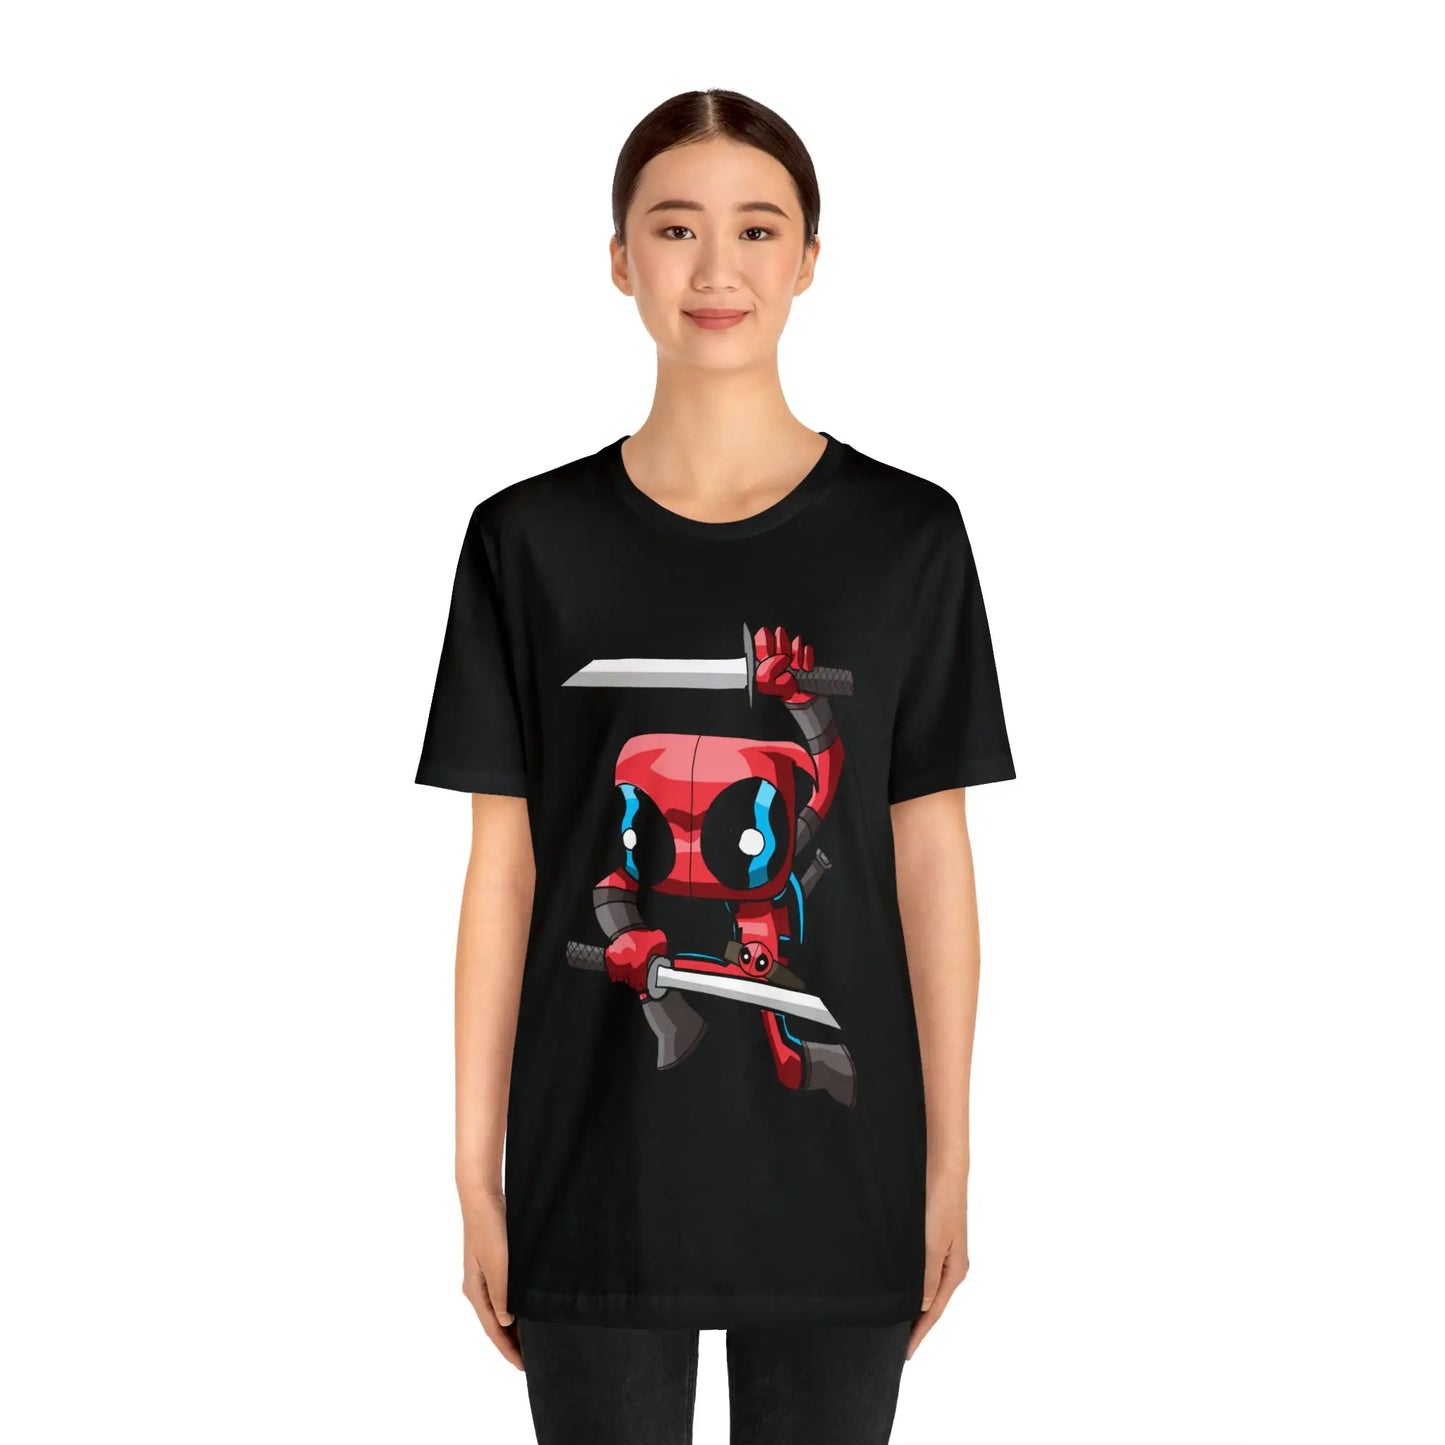 Deadpool T-shirt Cartoon Parody Tee Unisex For Men and Women